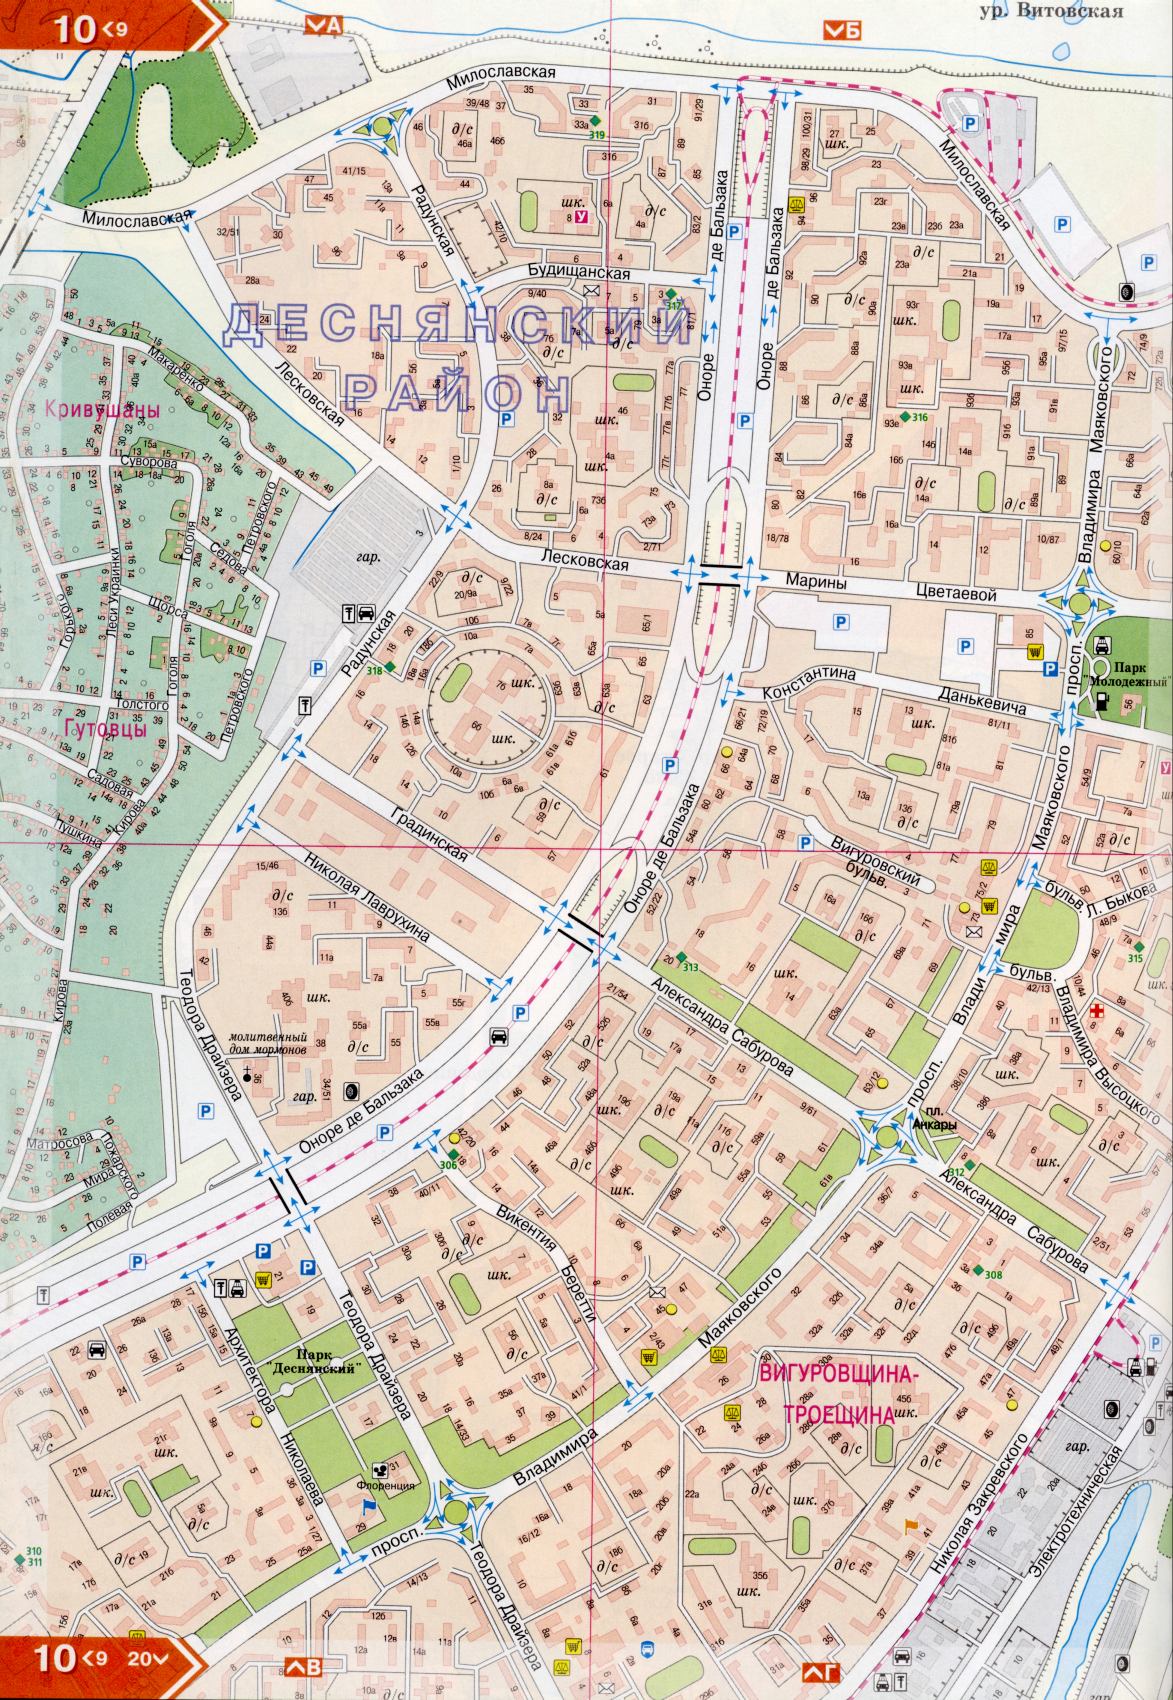 Kiew Karte Details 1cm = 150m für 45 Blatt. Karte von Kiew aus dem Atlas von Autobahnen. Laden Sie eine detaillierte Karte, H0